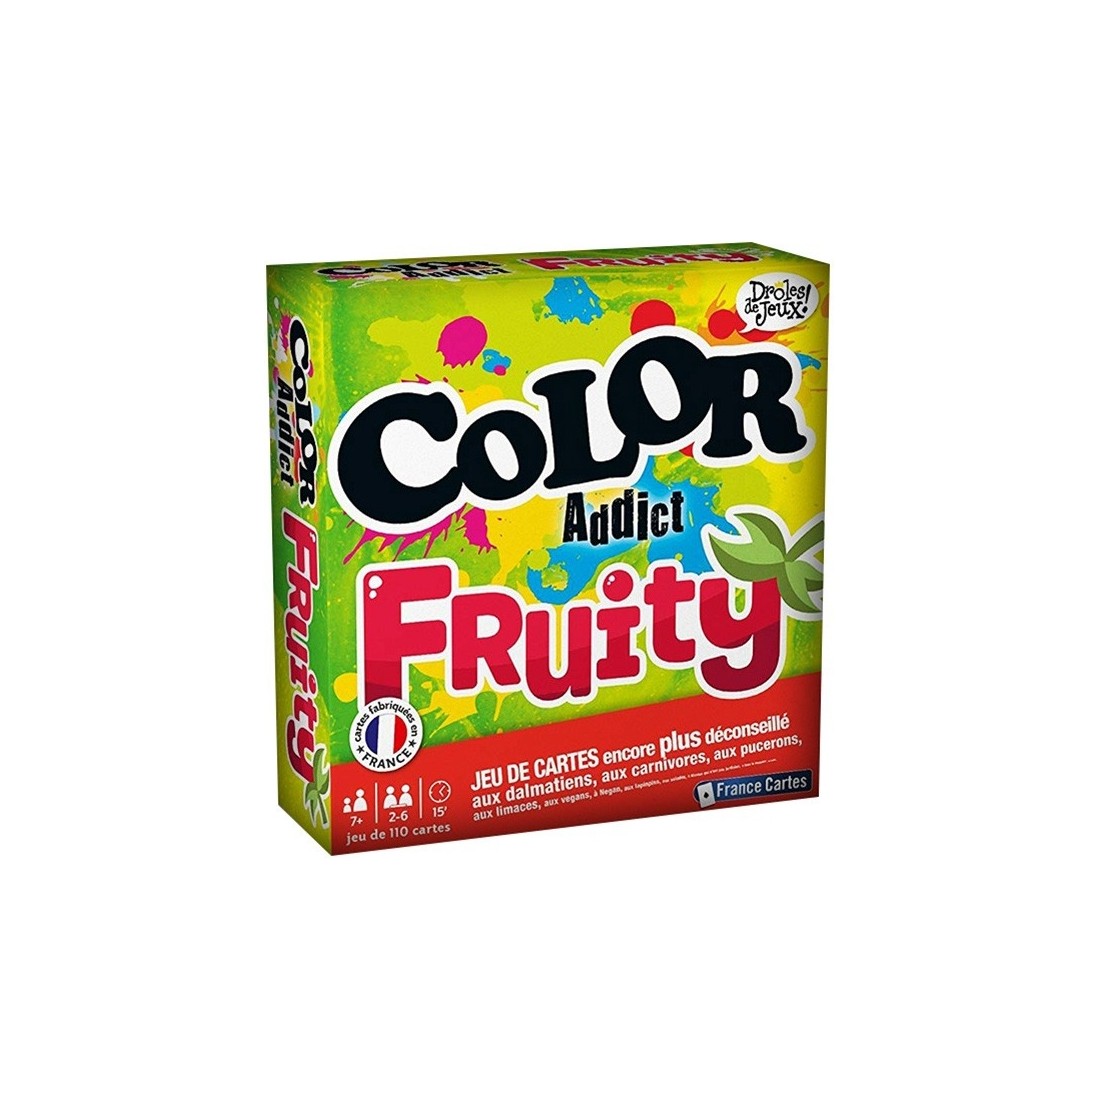 Color Addict: Fruity - Jeu de société - France Cartes - Ducale